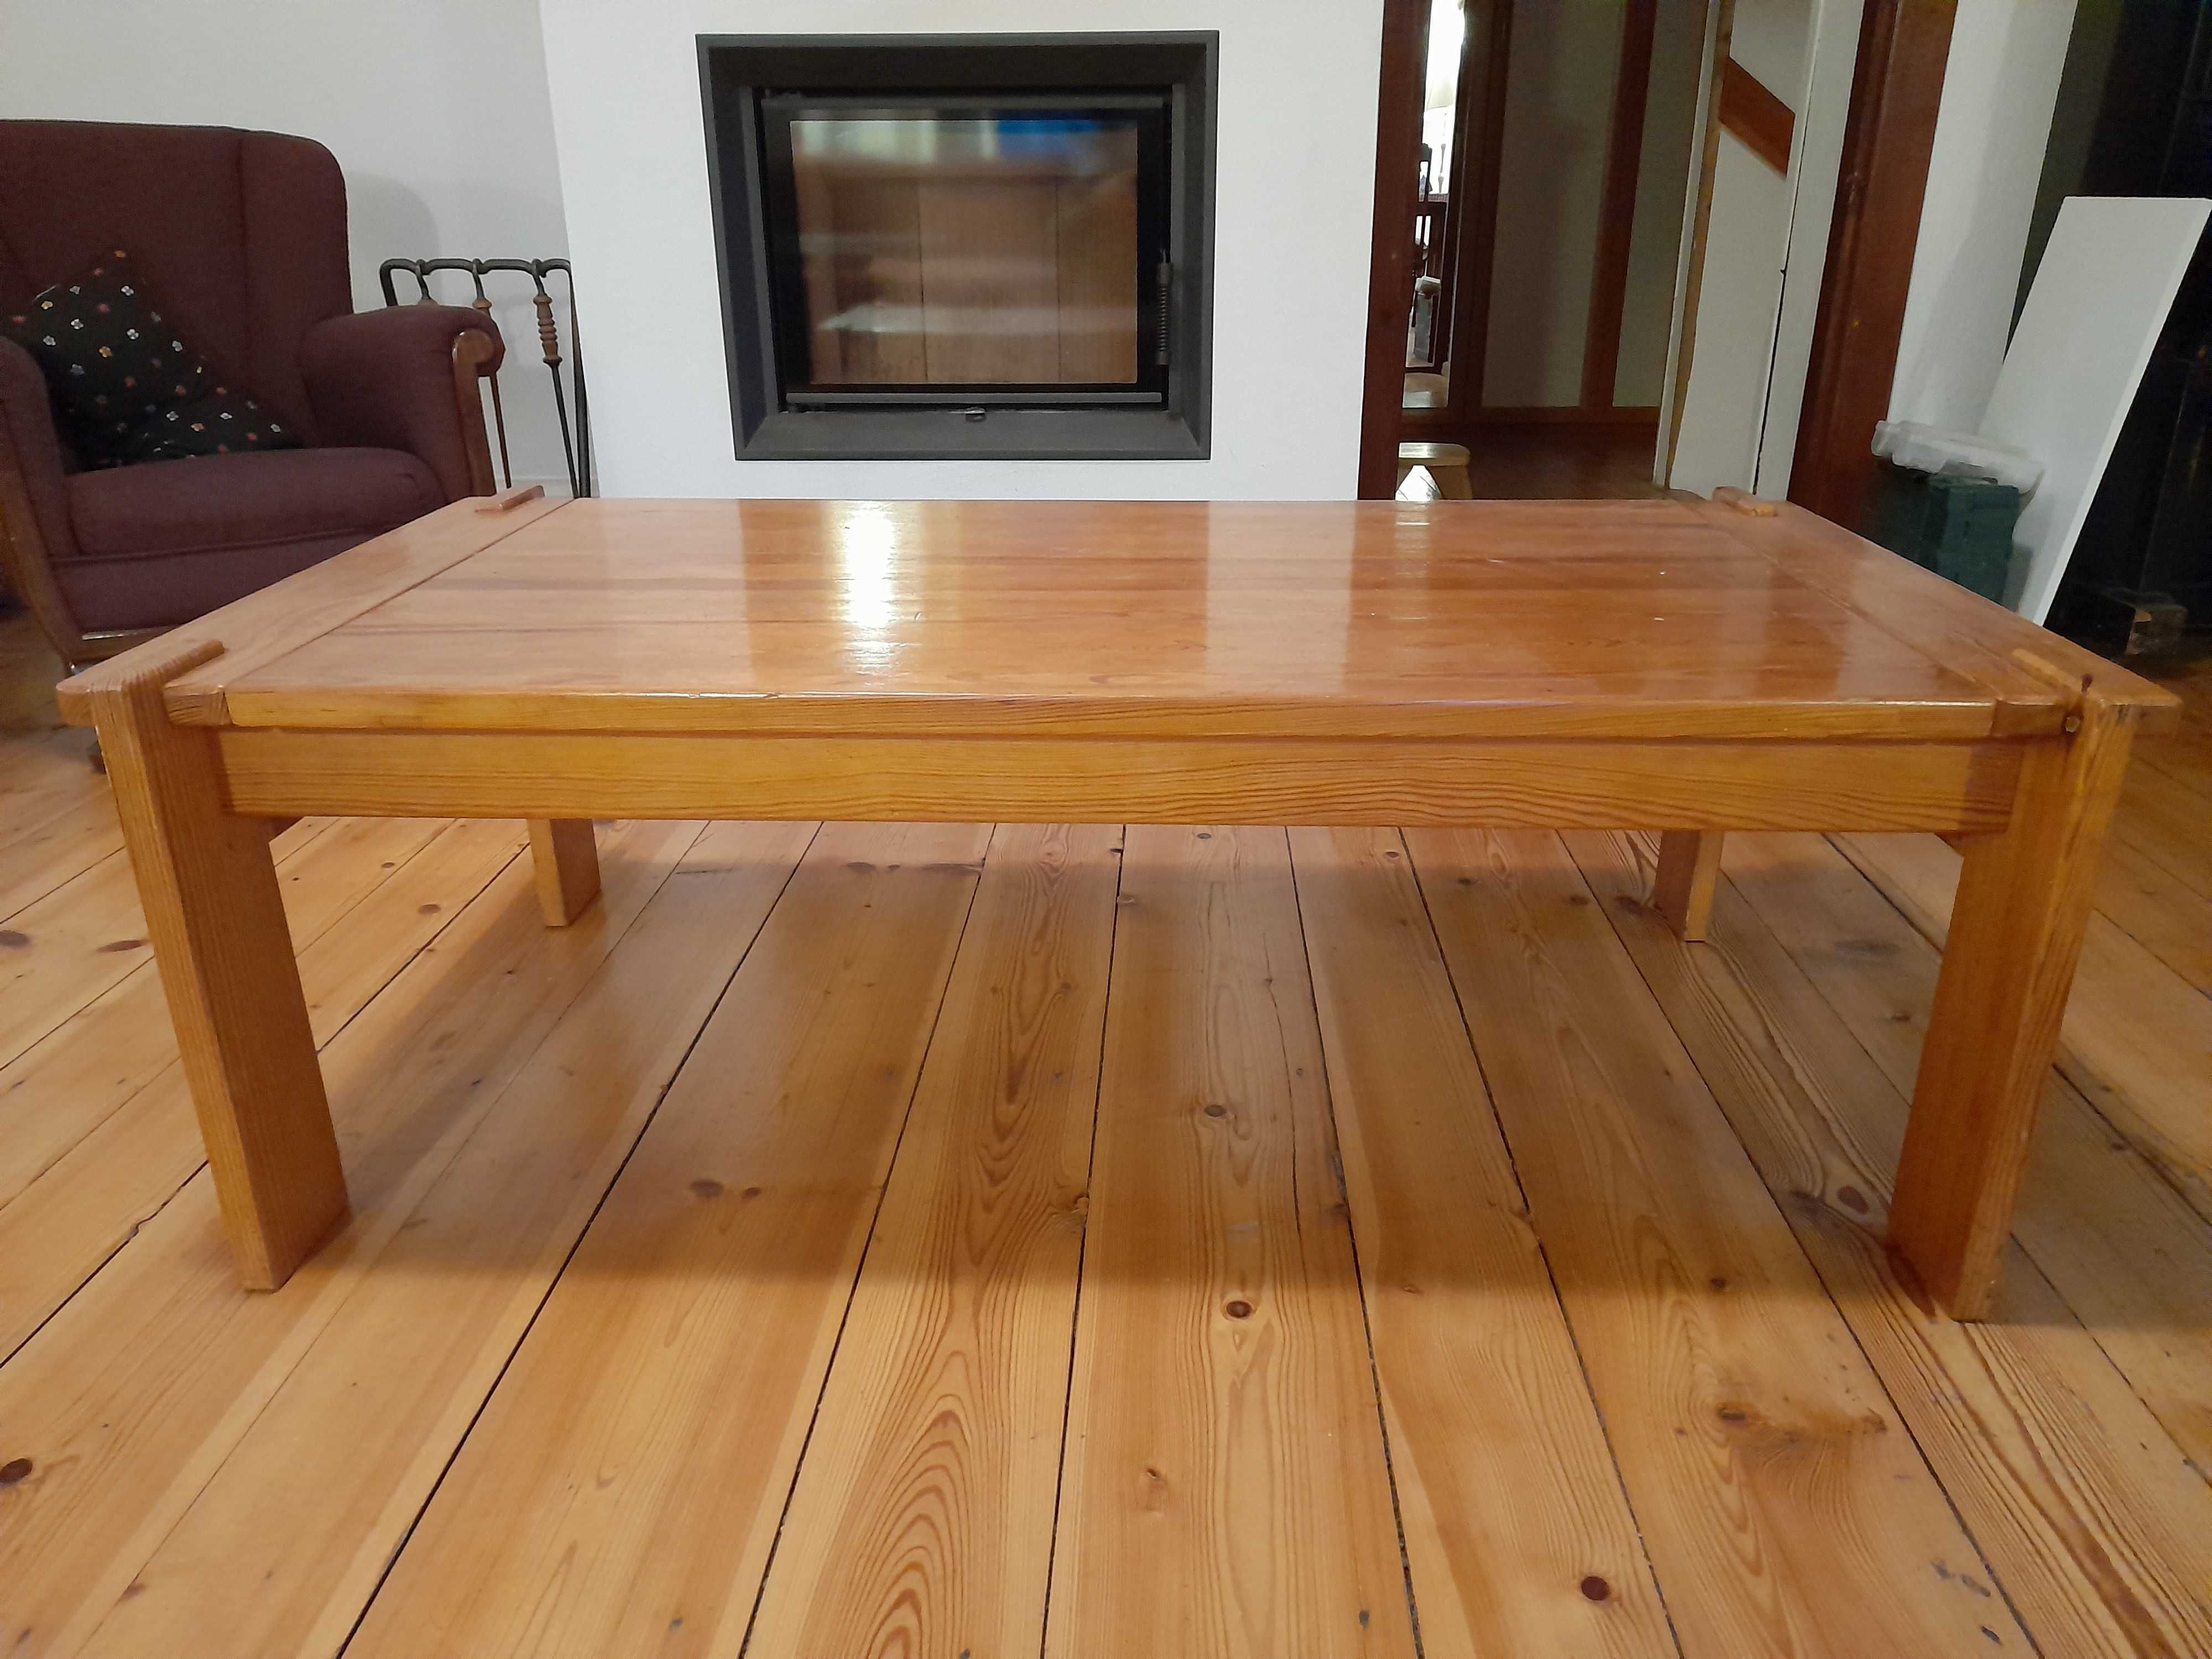 Stół drewniany typu ława: wys 47cm, szerokość 70 cm, długość 140 cm